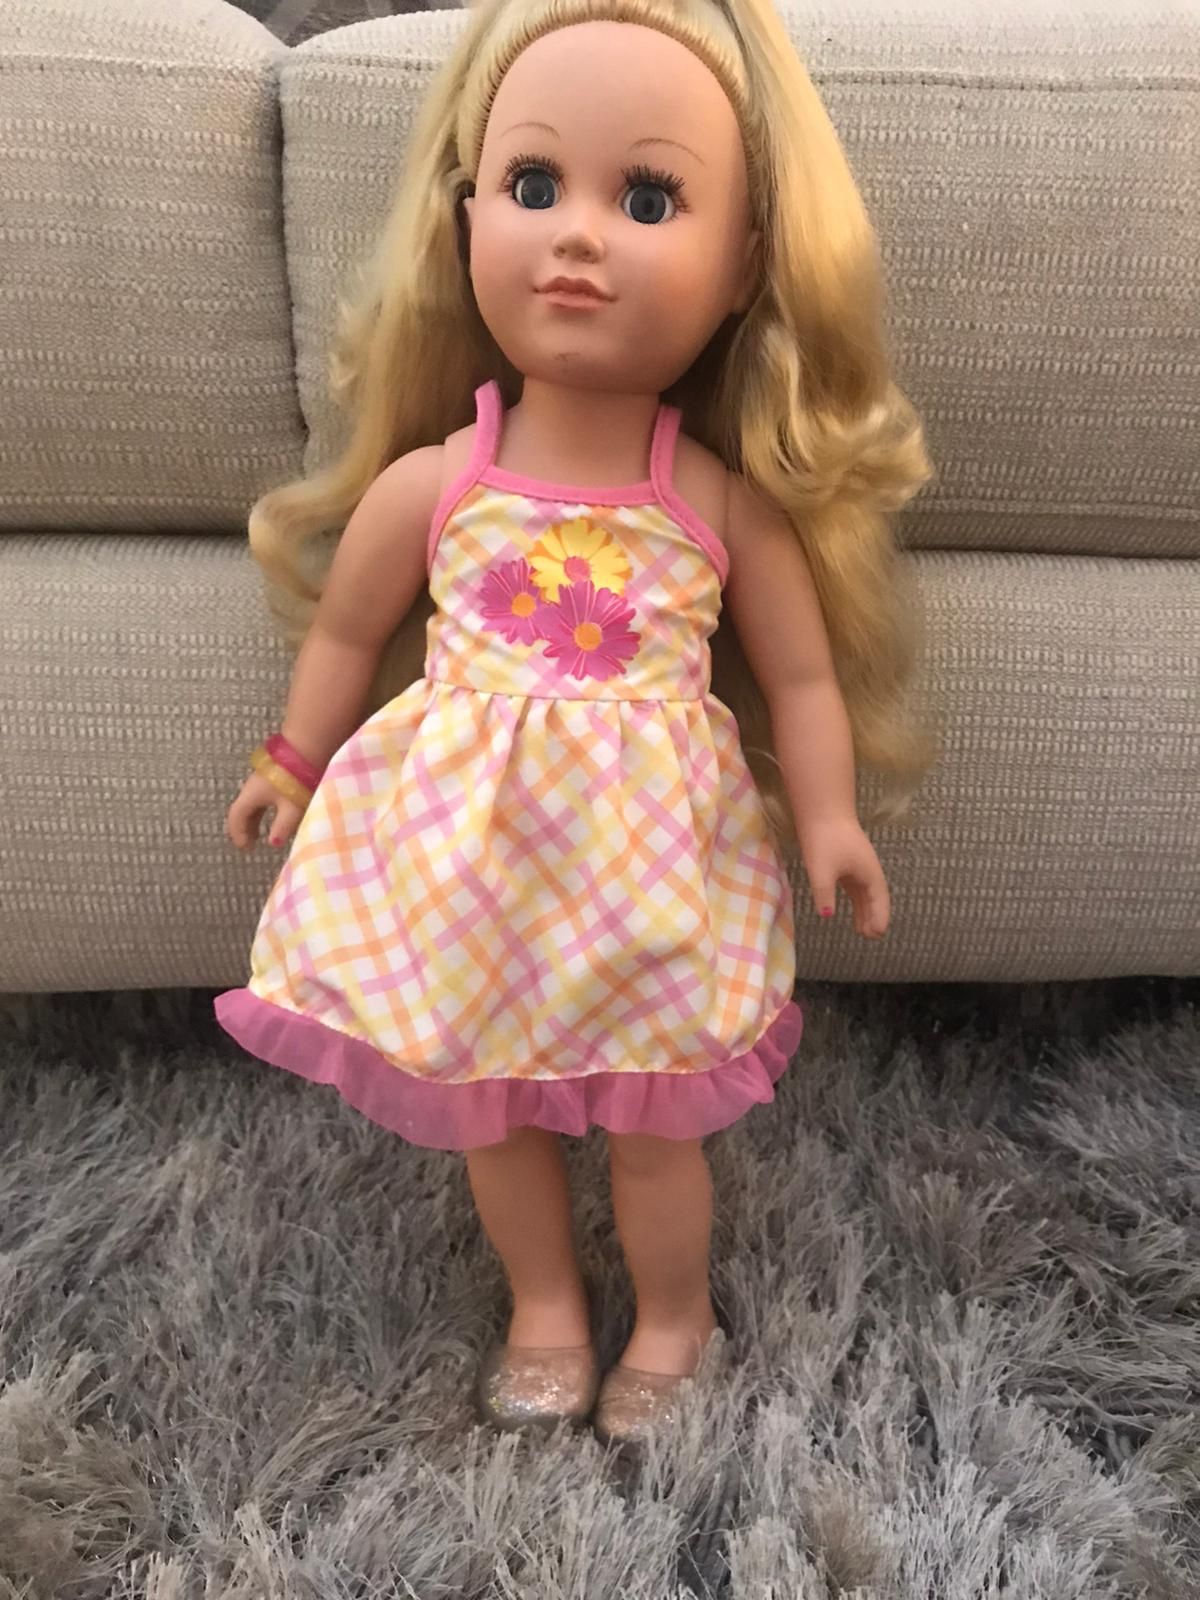 Doll for girl Toys Muñecas para niñas juguetes regalos